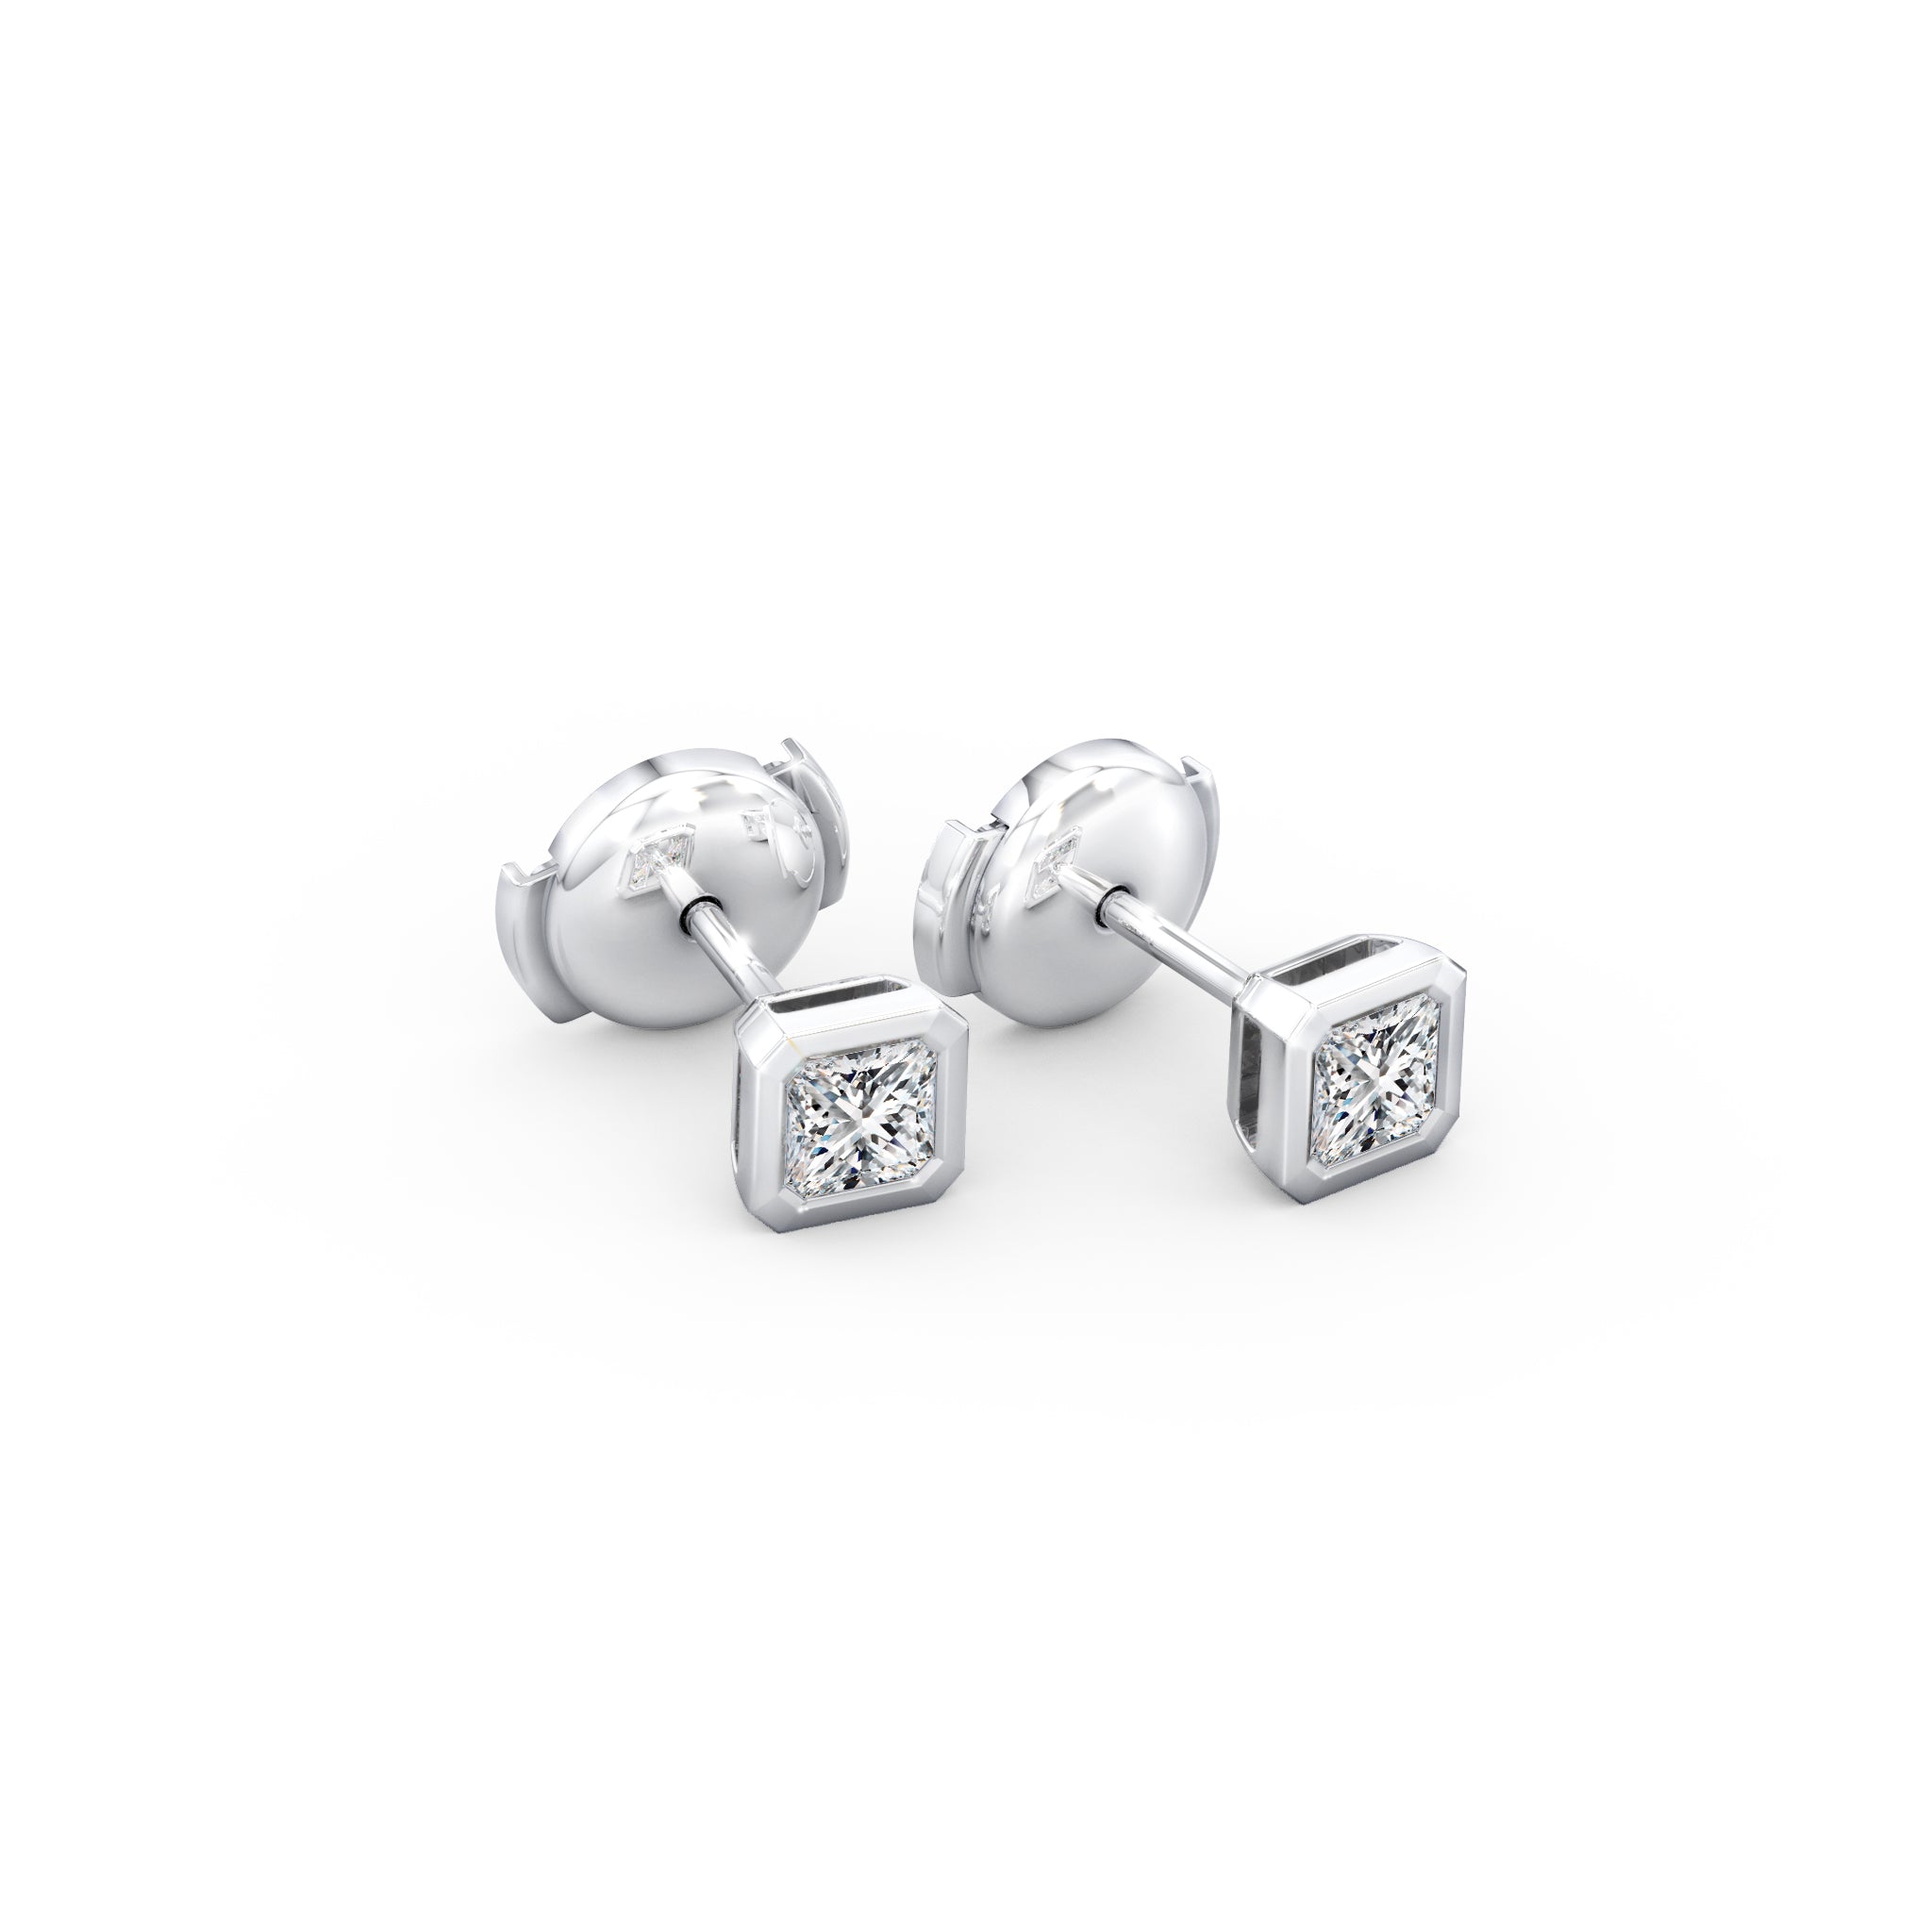 Shimansky - My Girl Diamond Solitaire Tube Set Earrings 0.30ct in 18K White Gold